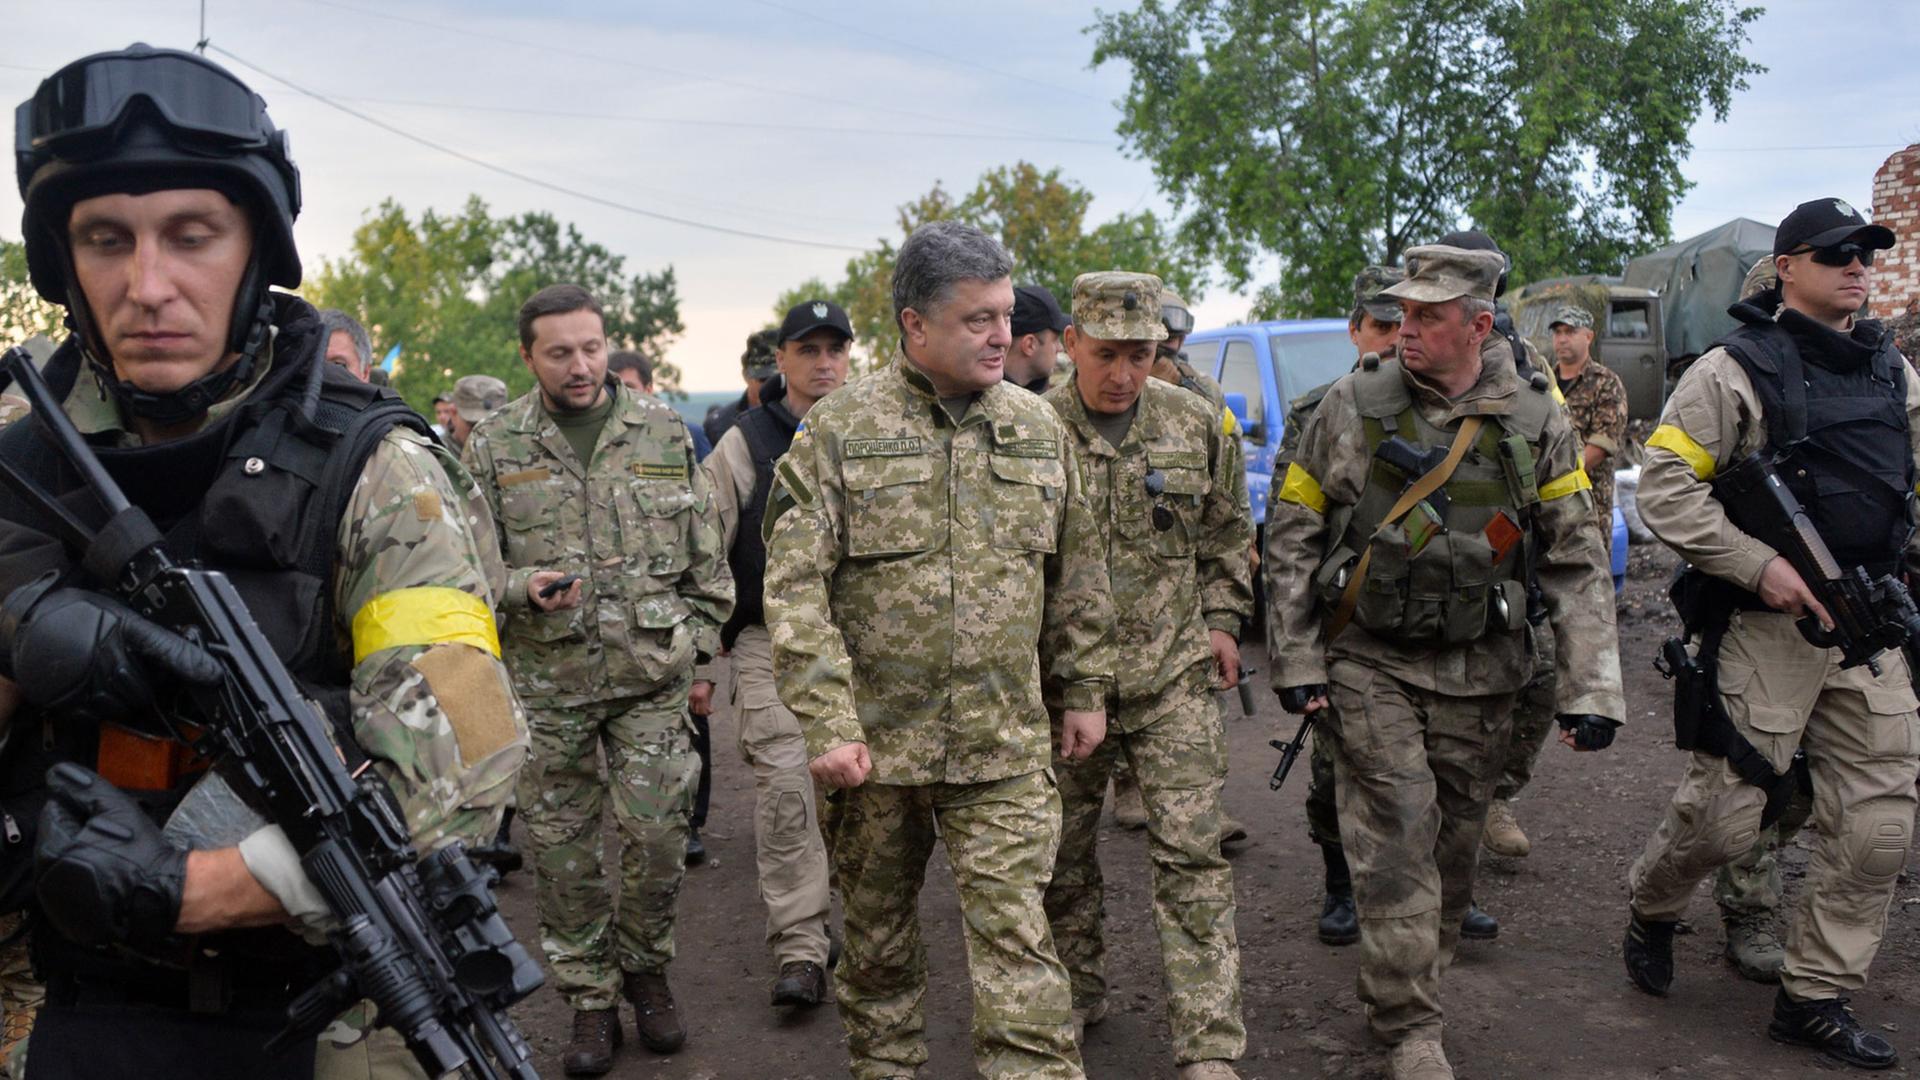 Der ukrainische Präsident Petro Poroschenko begleitet mit einer Militäruniform bekleidet ukrainische Soldaten während eines Besuches im Armee-Hauptquartier nahe der Stadt Izyum am 08.07.2014.